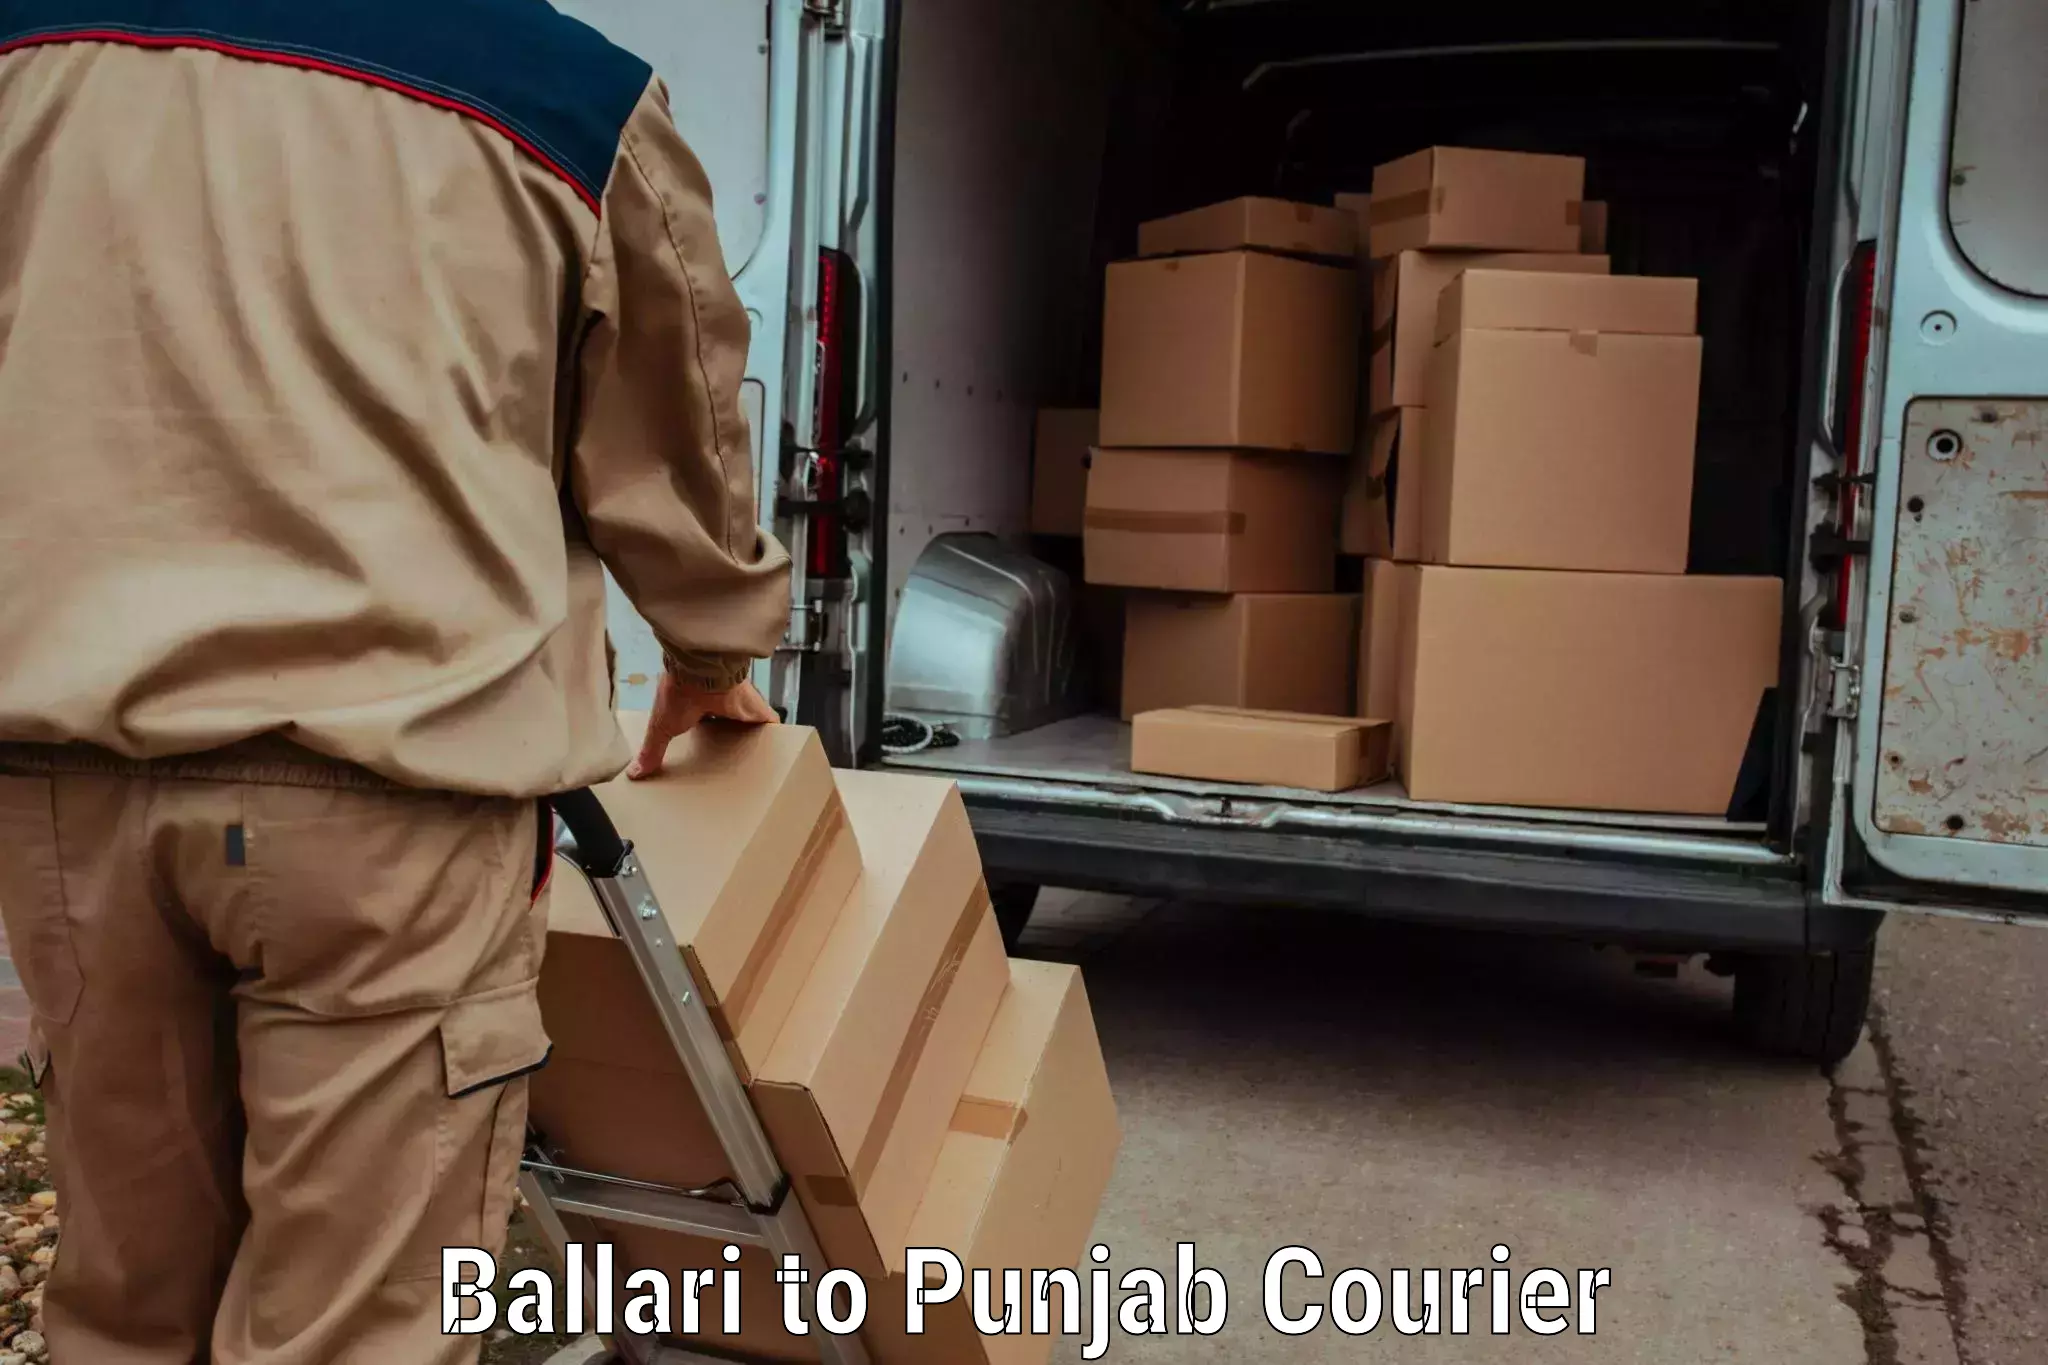 User-friendly courier app Ballari to Gurdaspur